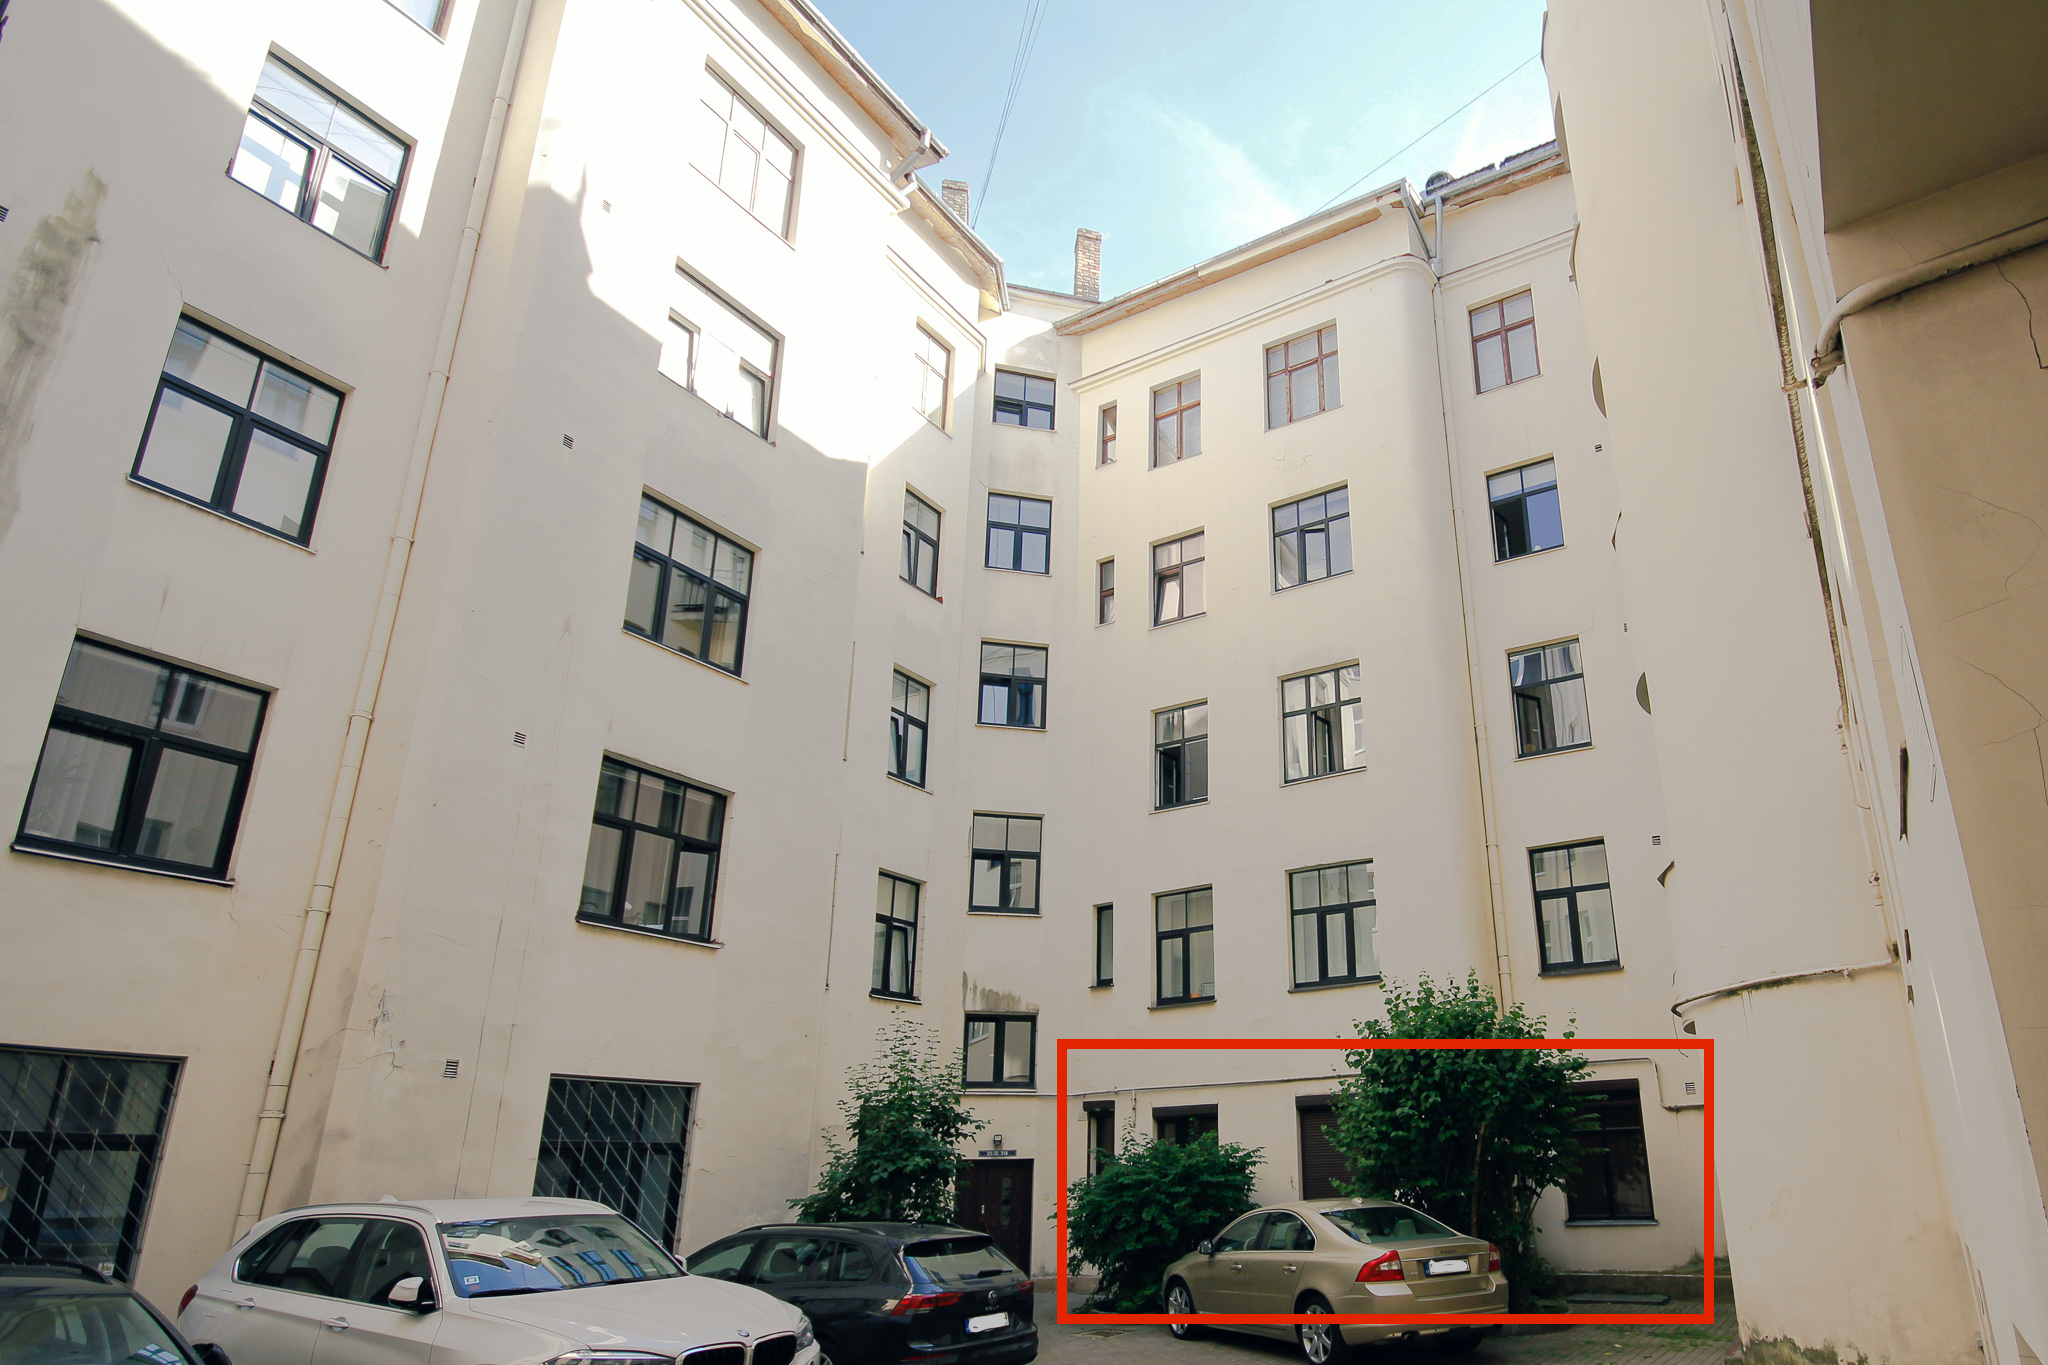 Office for sale, Krišjāņa Valdemāra street - Image 1